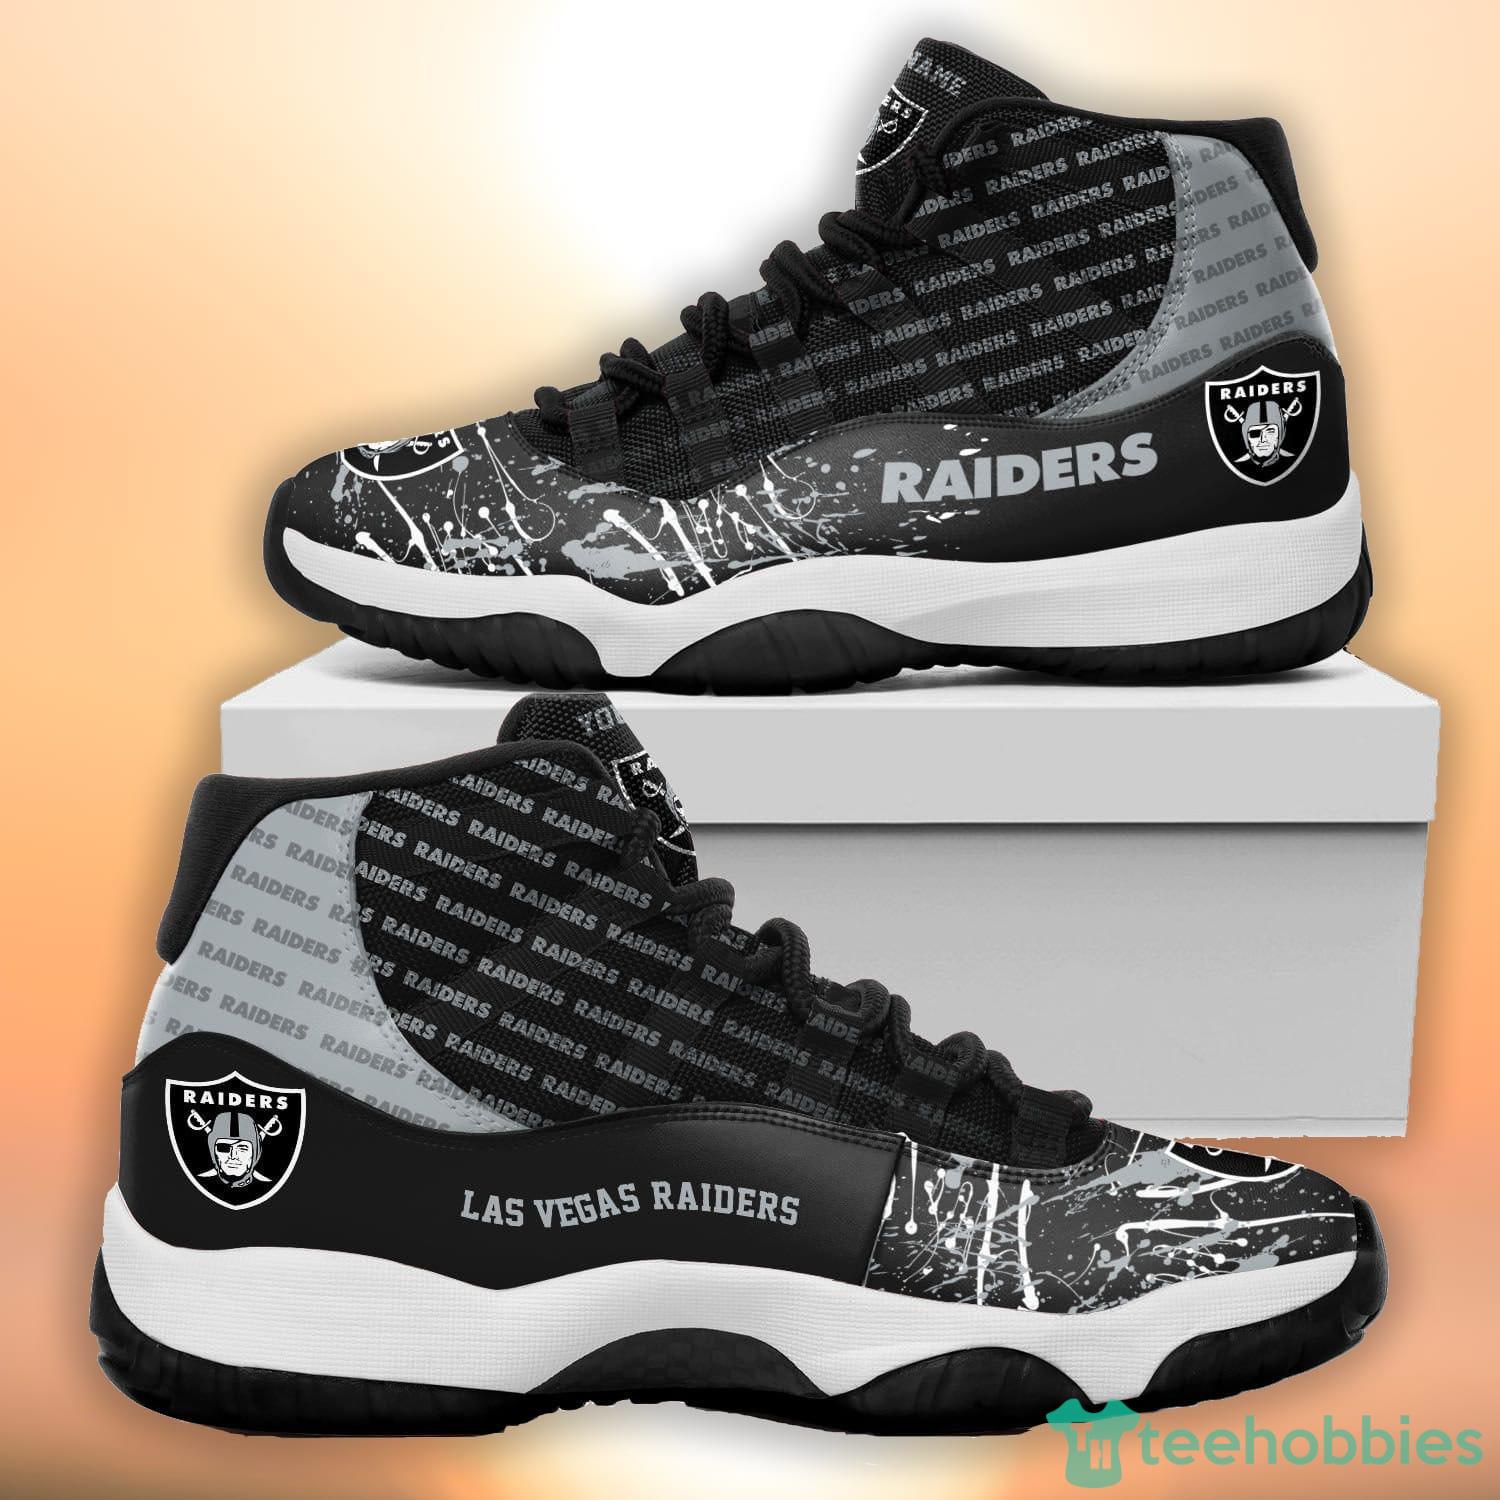 Las Vegas Raiders Personalized Air Jordan 4 Sneaker - Inktee Store